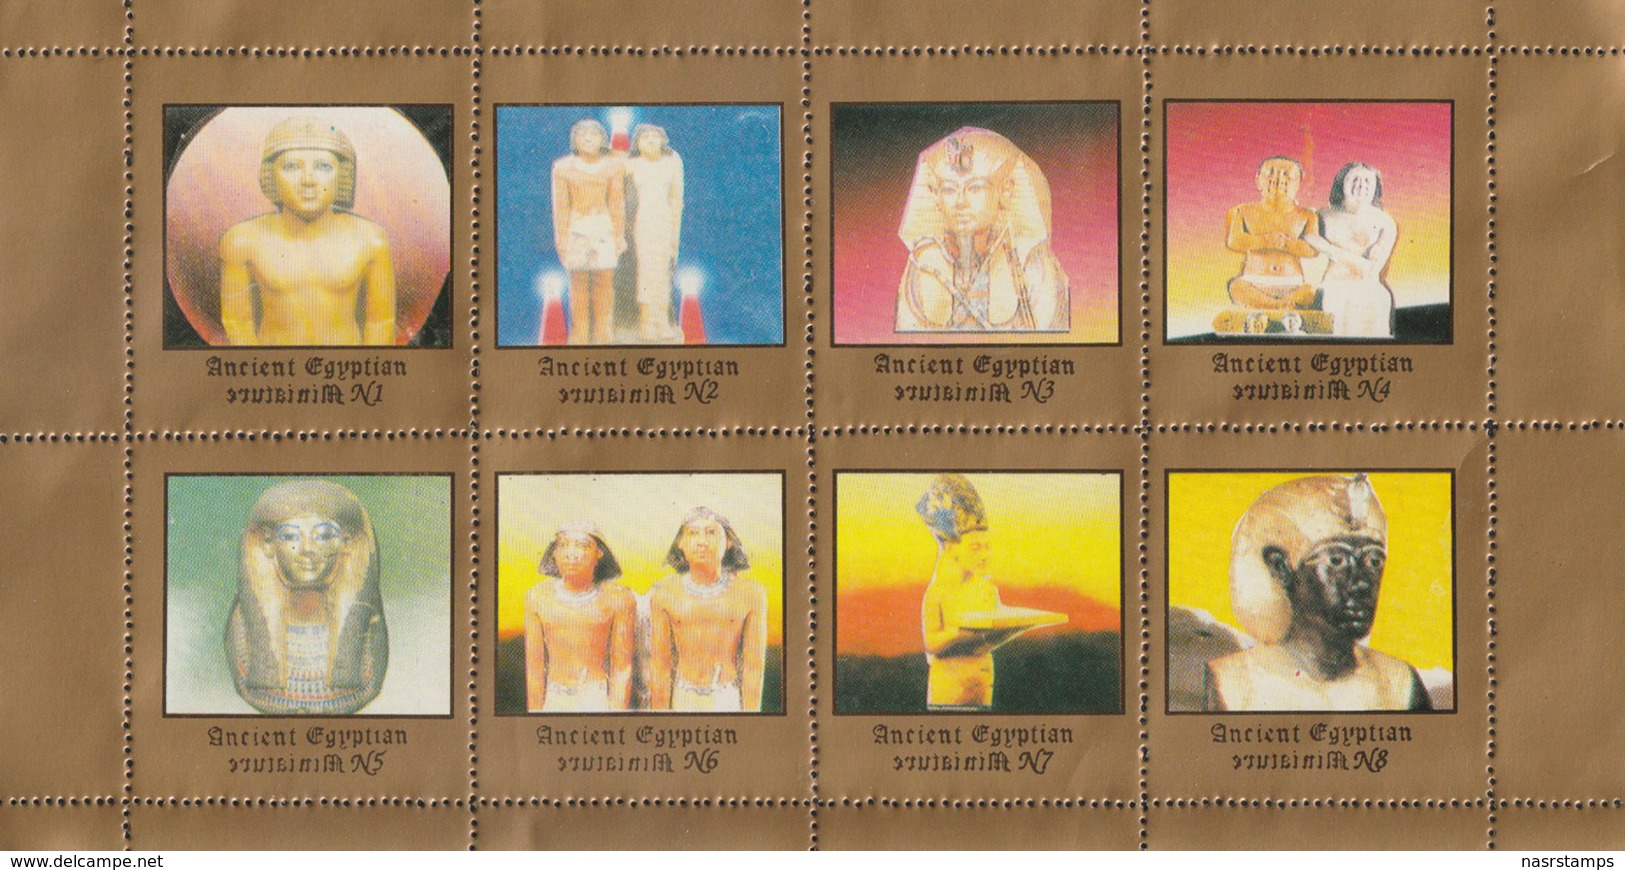 Egyptology - Labels - ( Complete Sheet - Egyptian Art - Egyptology ) - MNH (**) - Egyptologie